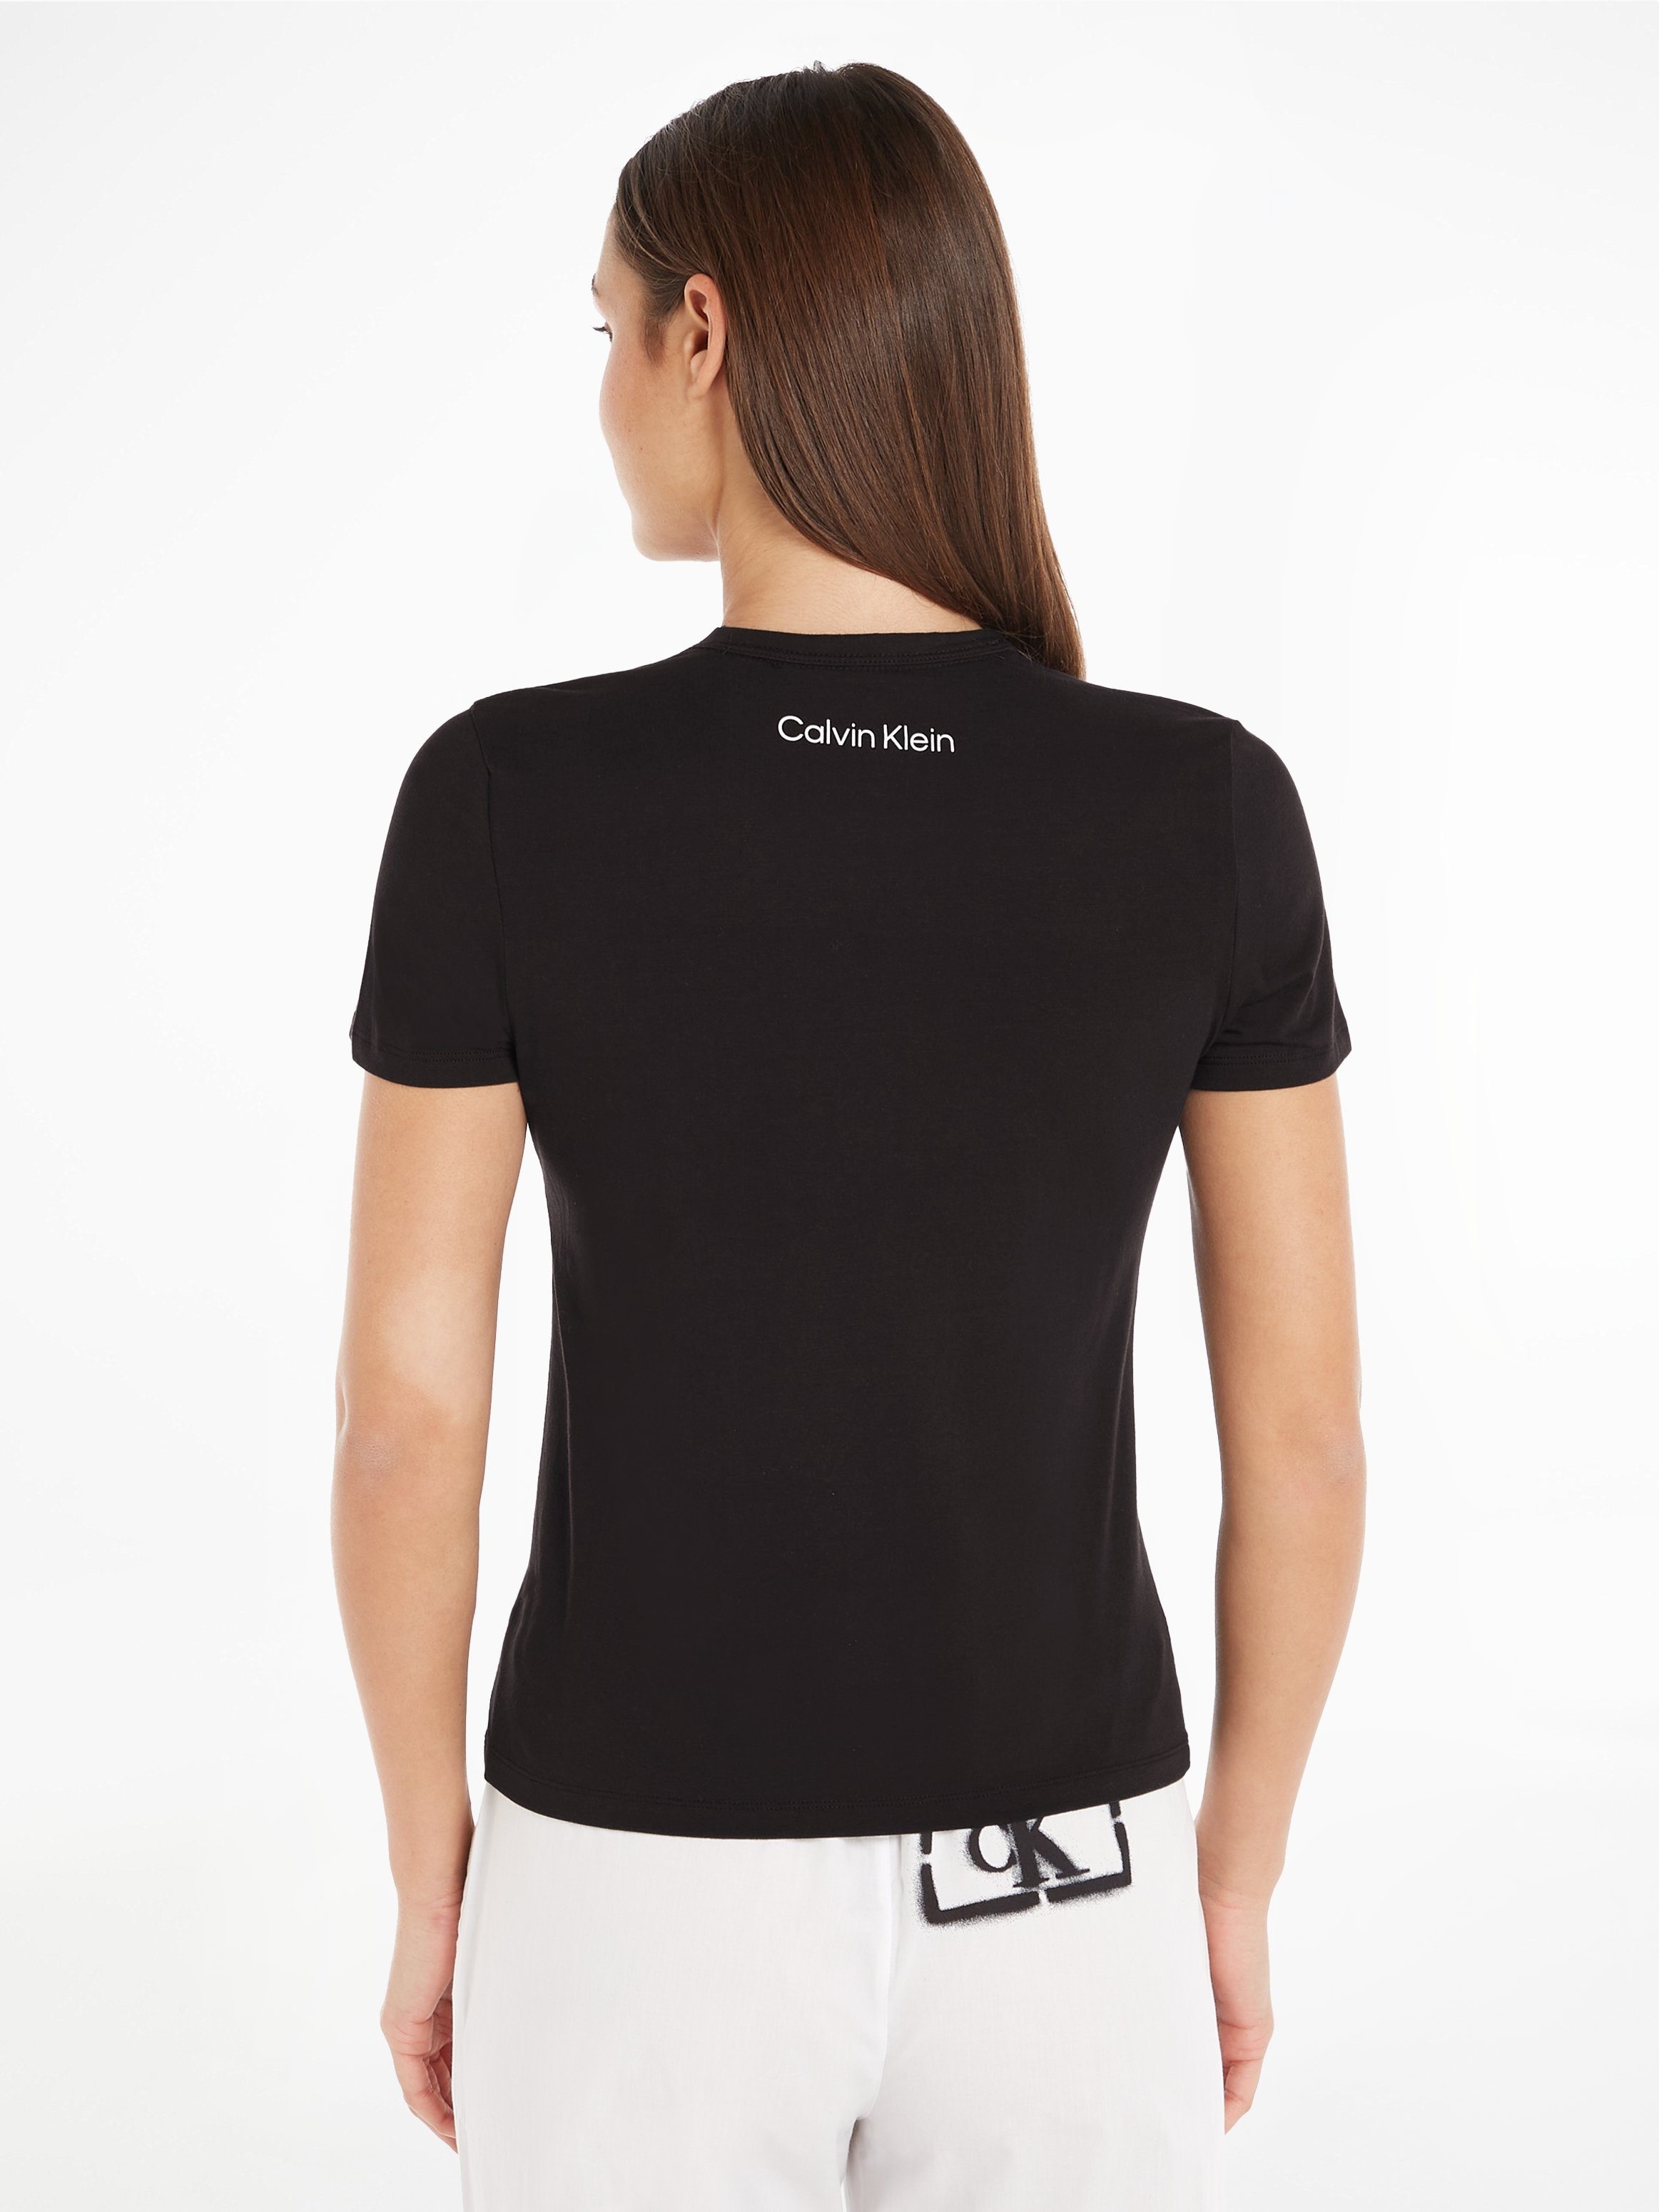 CREW BLACK S/S Kurzarmshirt Calvin Klein NECK Underwear